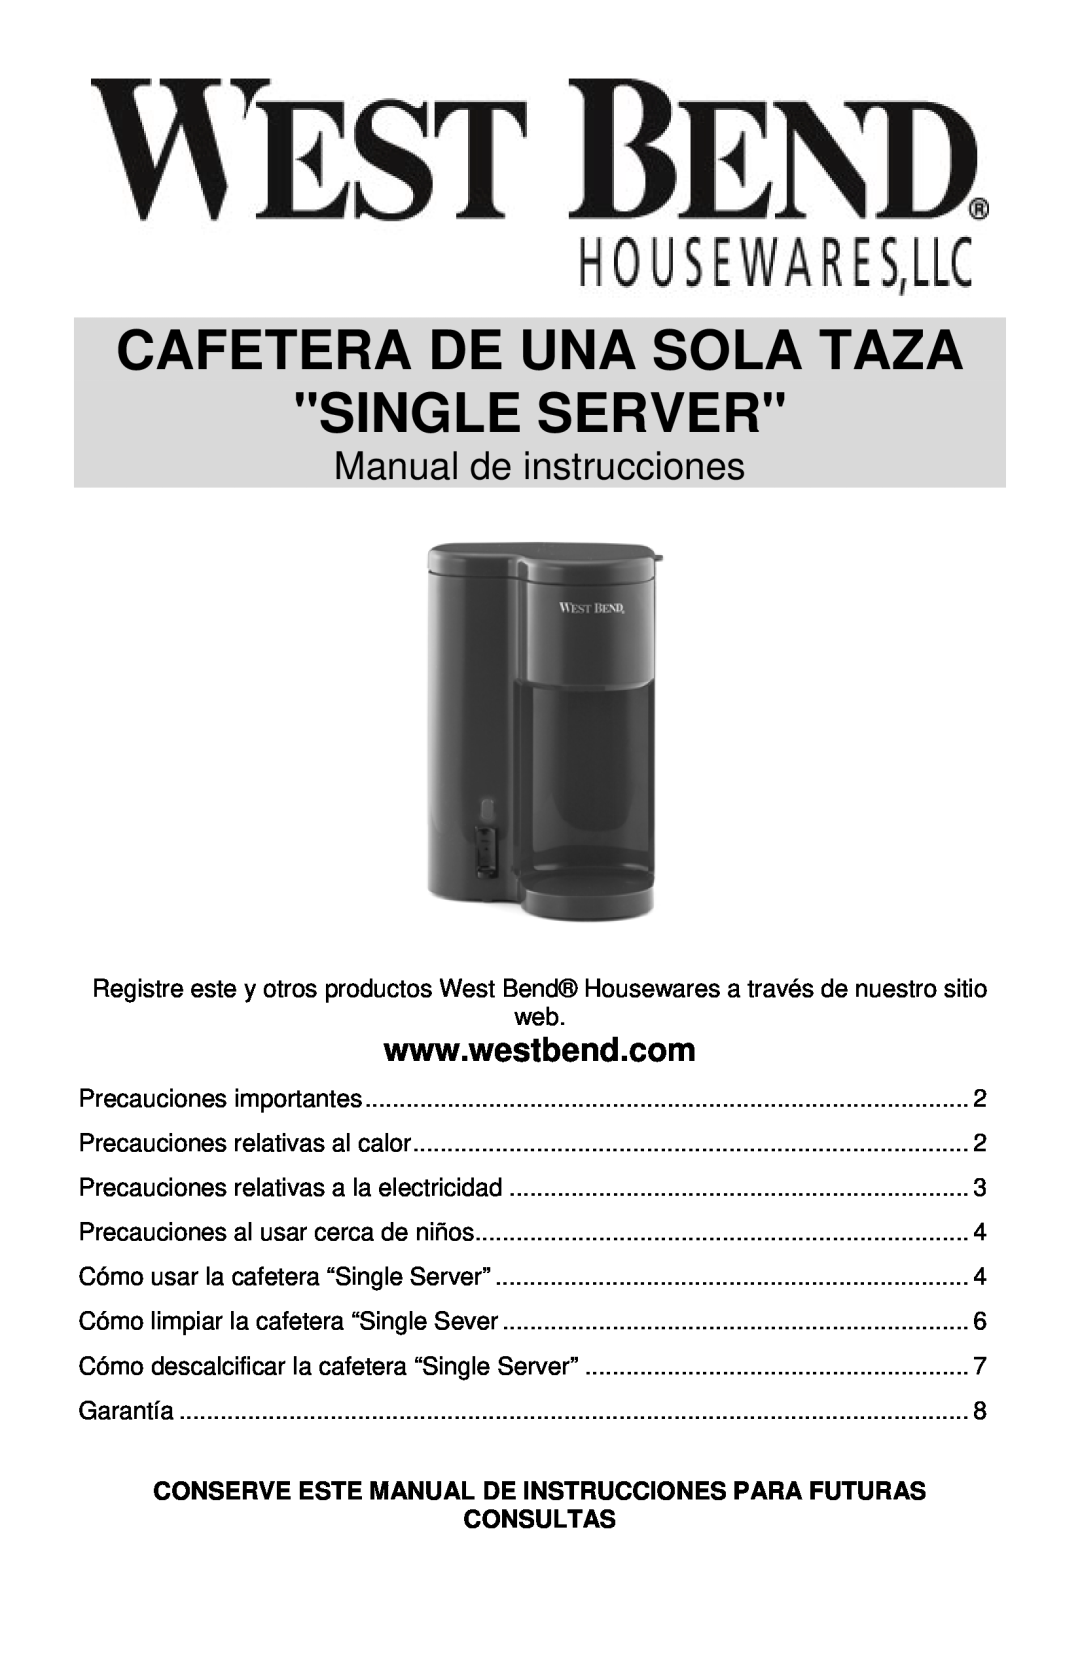 West Bend SINGLE SERVE COFFEEMAKER Cafetera De Una Sola Taza Single Server, Manual de instrucciones, Consultas 